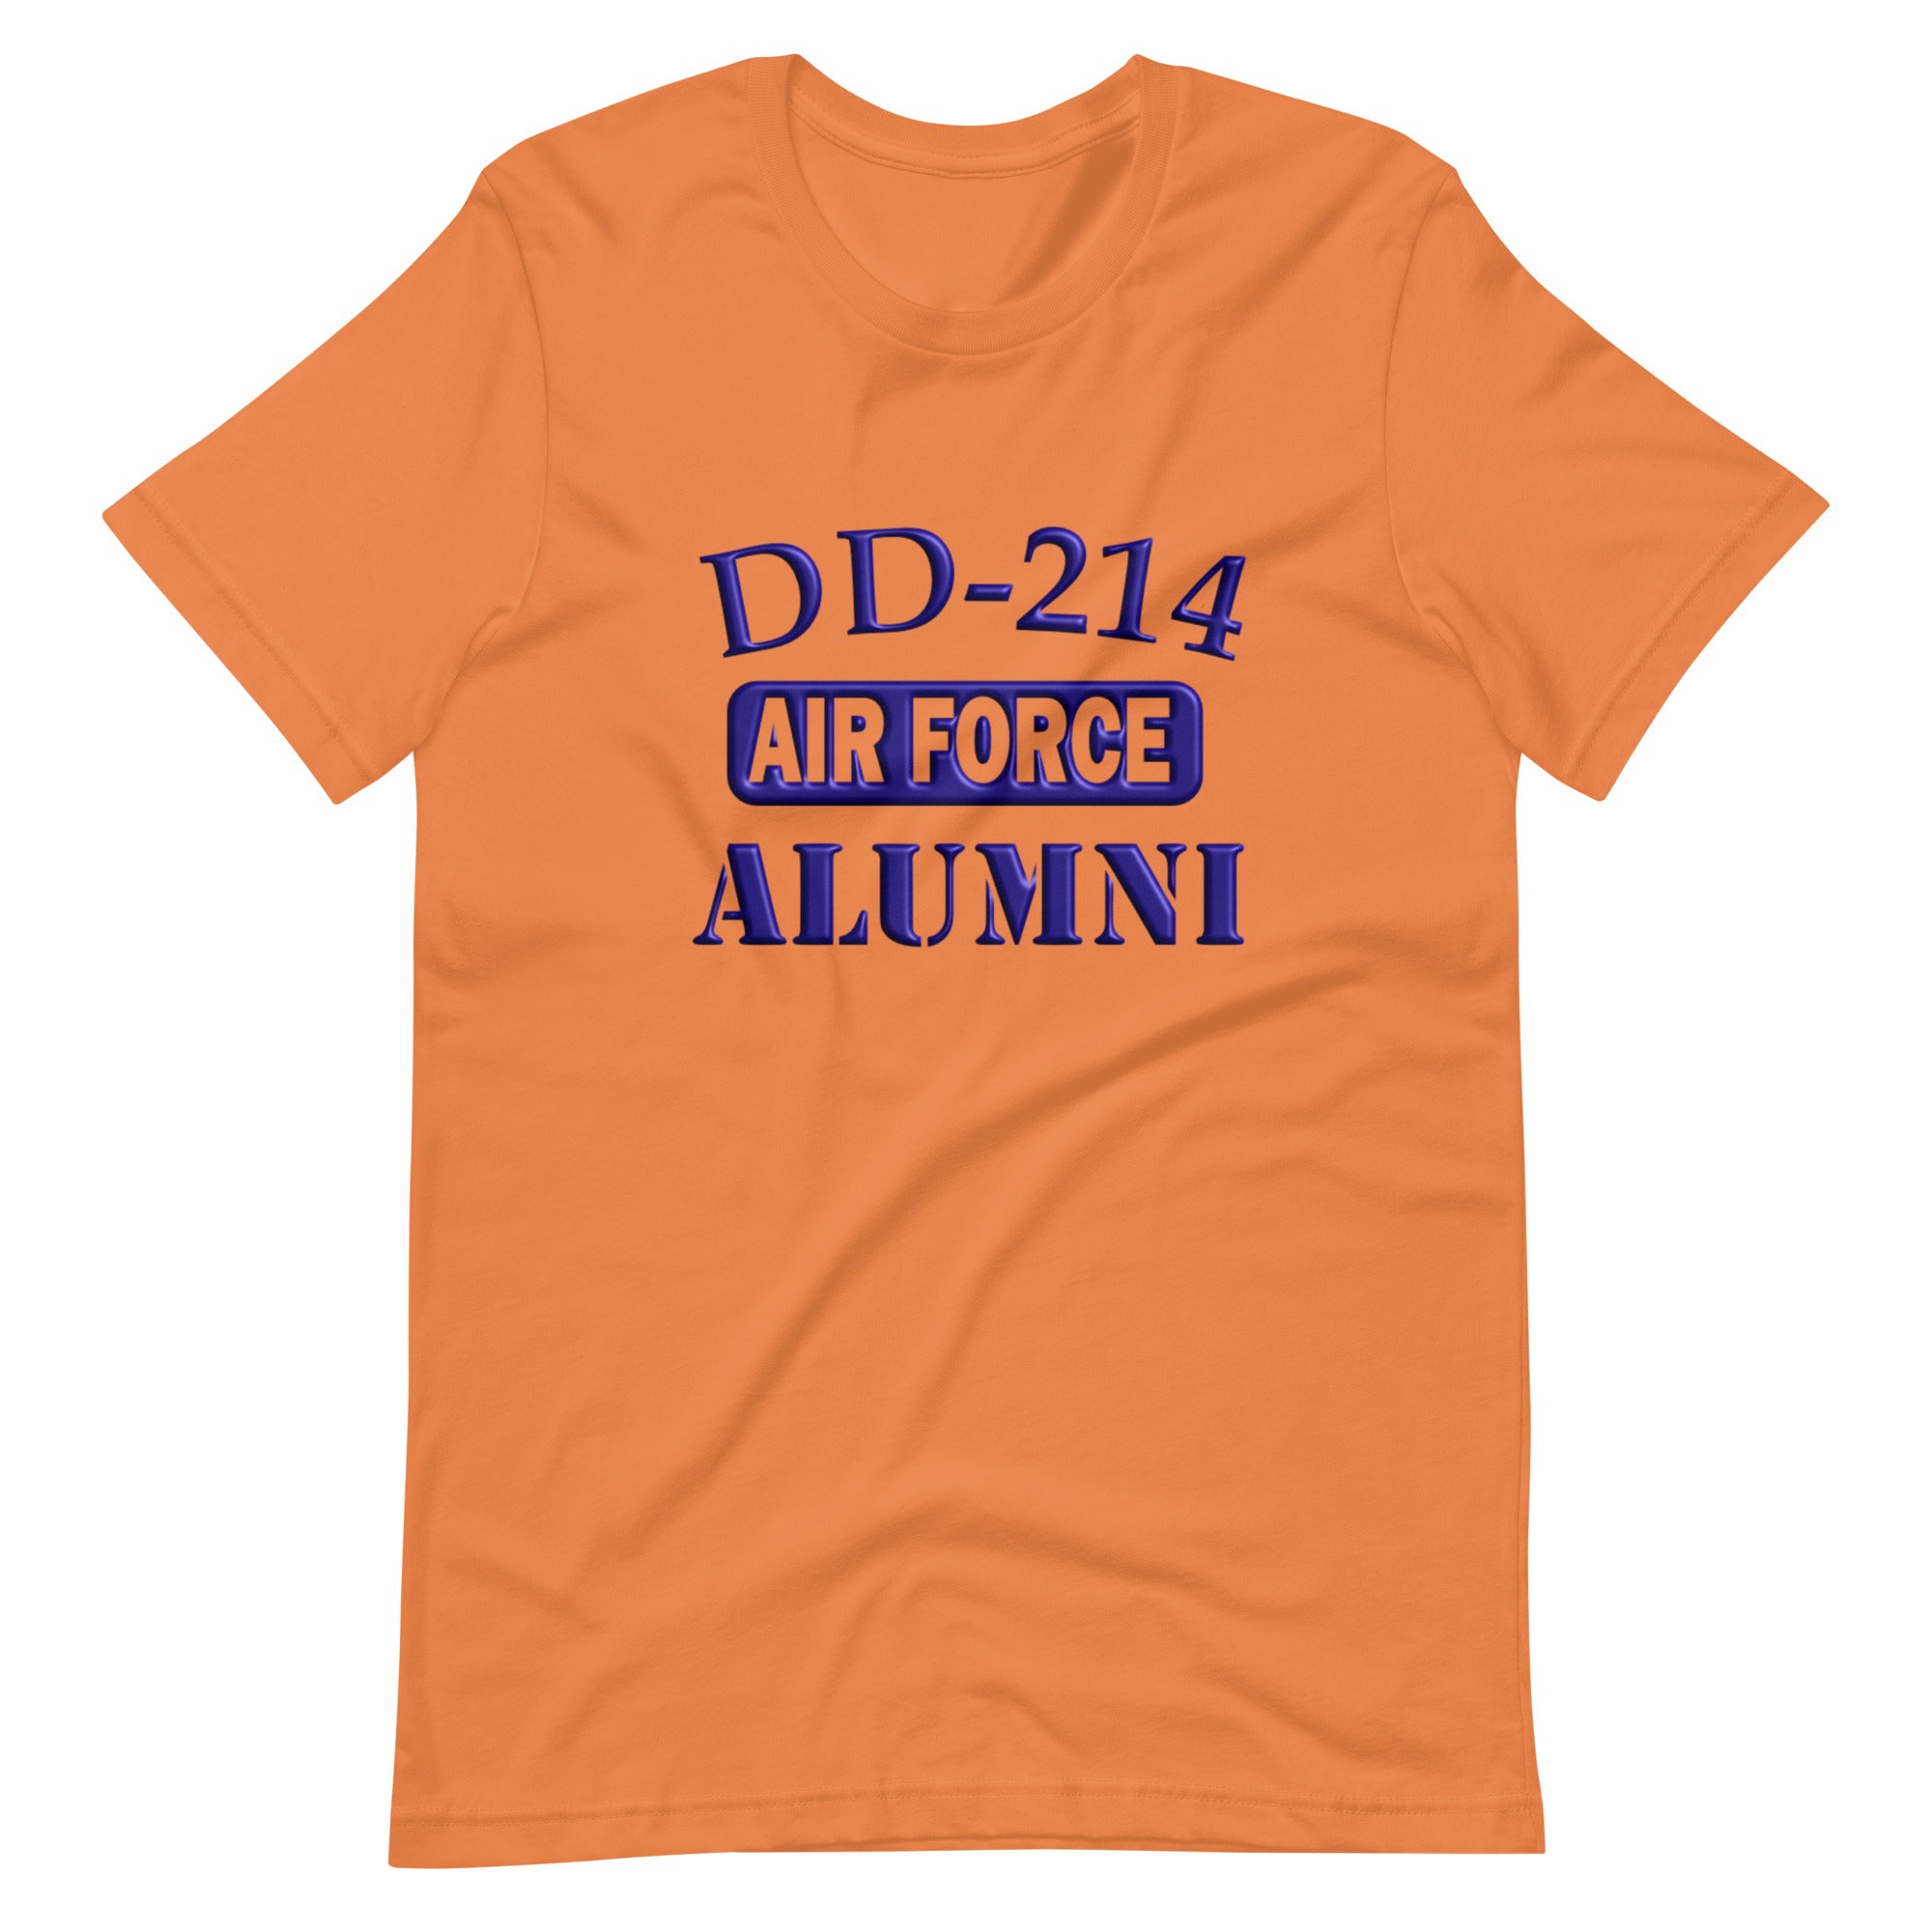 Airforce DD-214 Alumni Tee